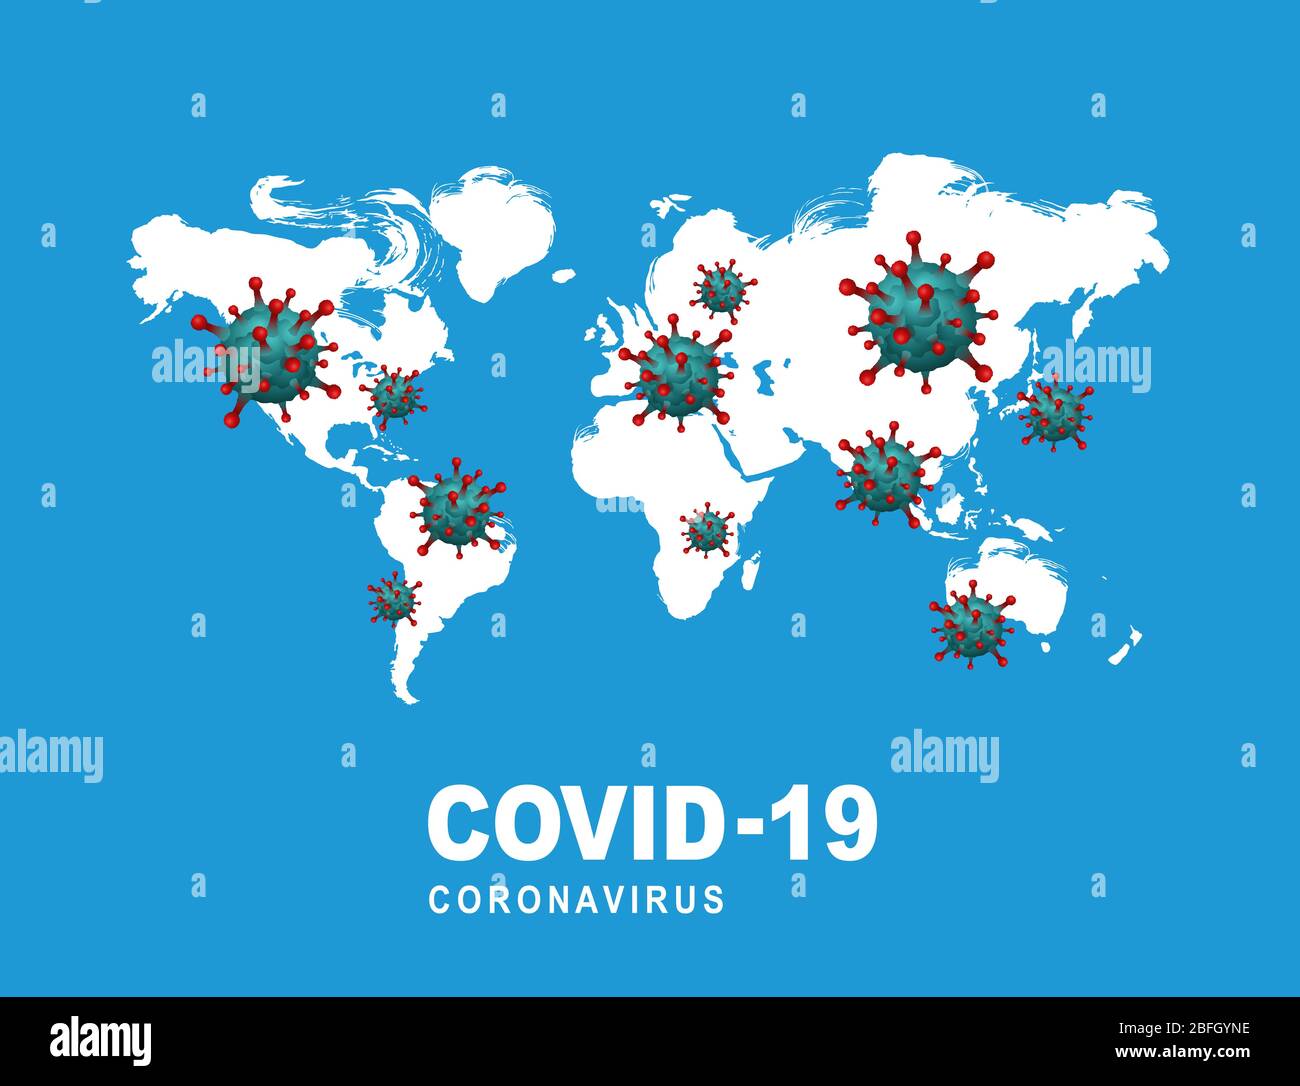 Covid-19 è sparso in tutto il mondo e rappresenta una mappa mondiale che oscilla a causa del rischio di coronavirus. Illustrazione Vettoriale